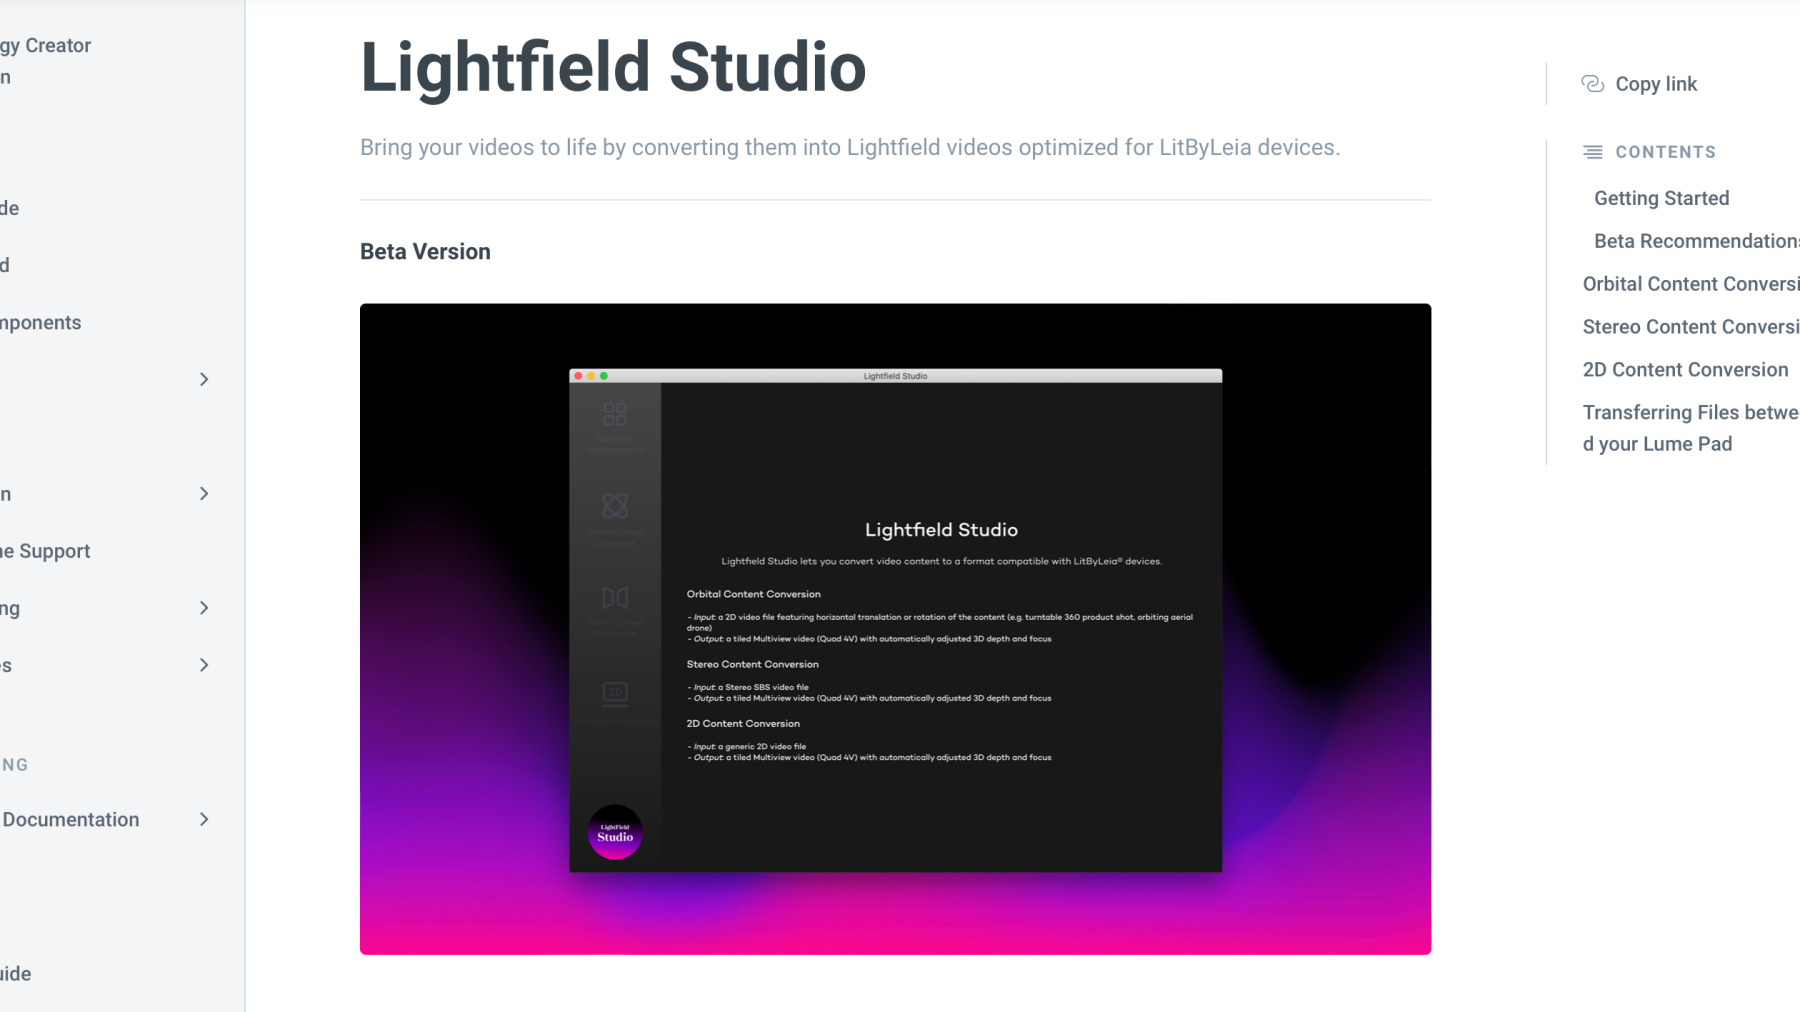 Lightfield Studio